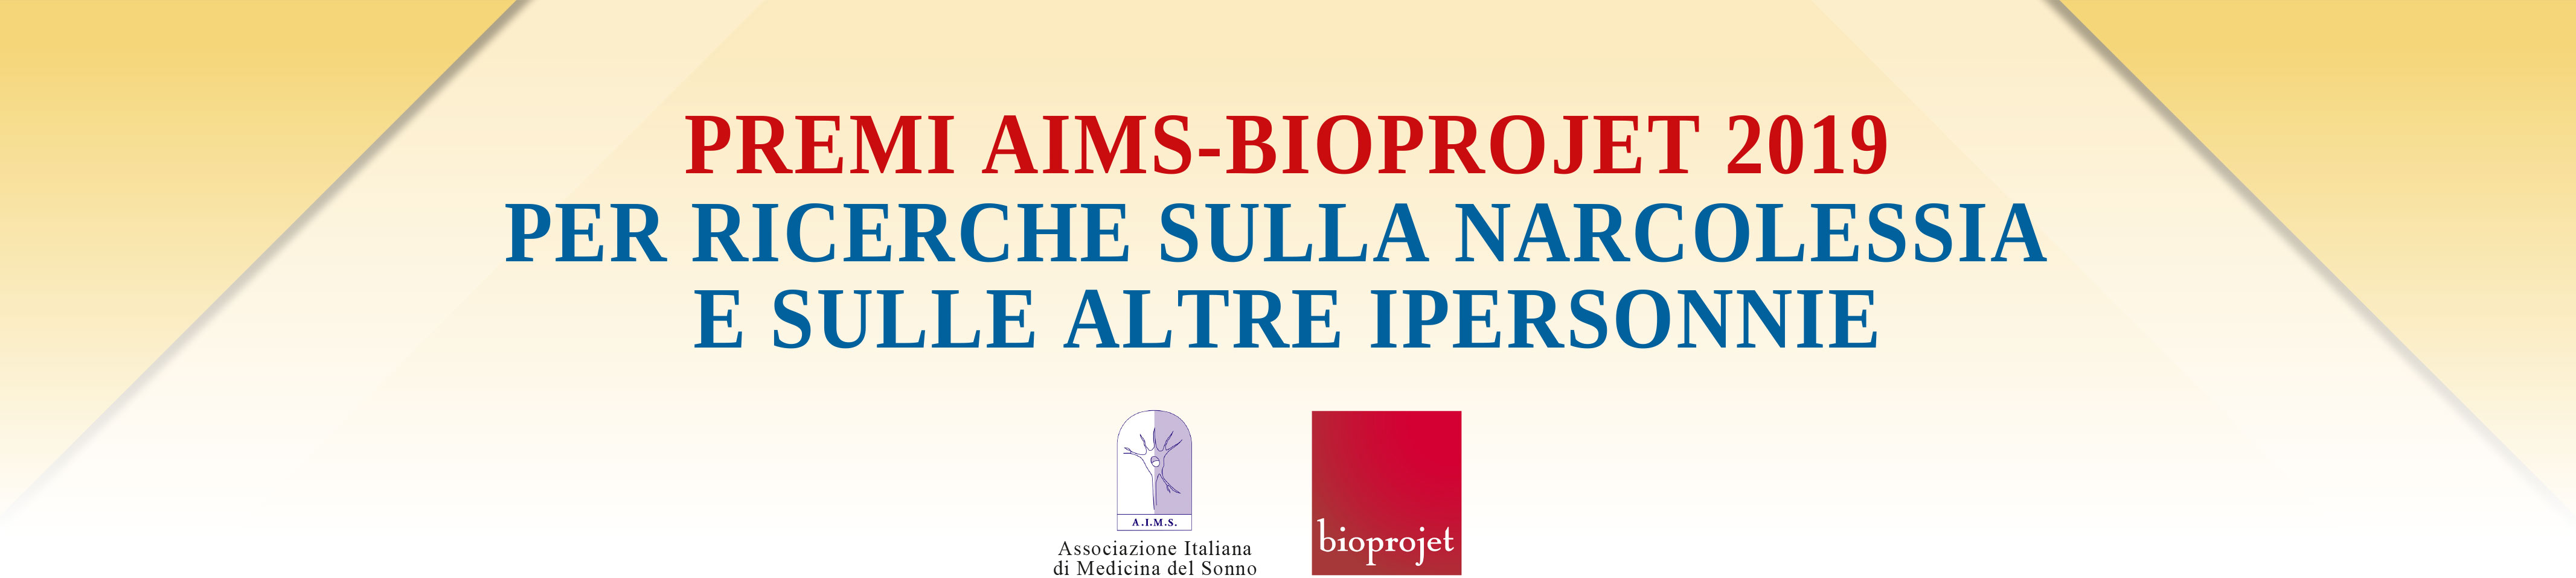 Bioprojet Italia - Congresso Nazionale AIMS 2019